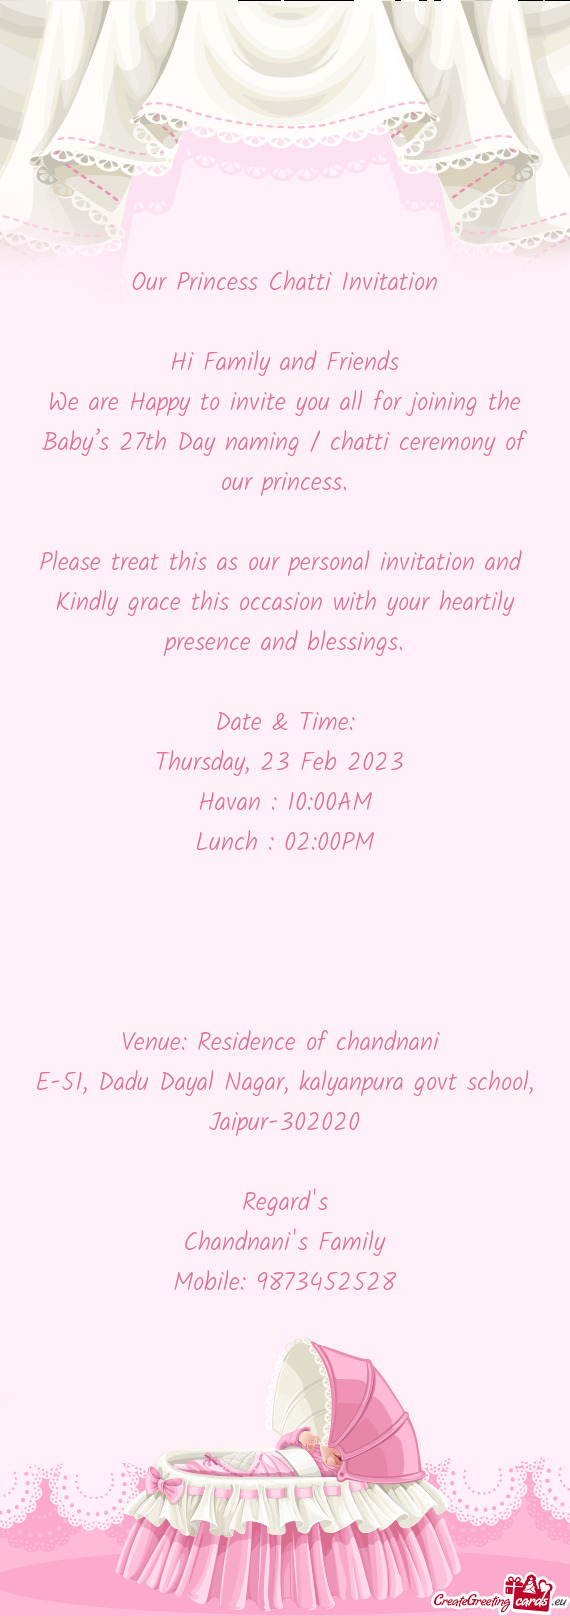 Our Princess Chatti Invitation